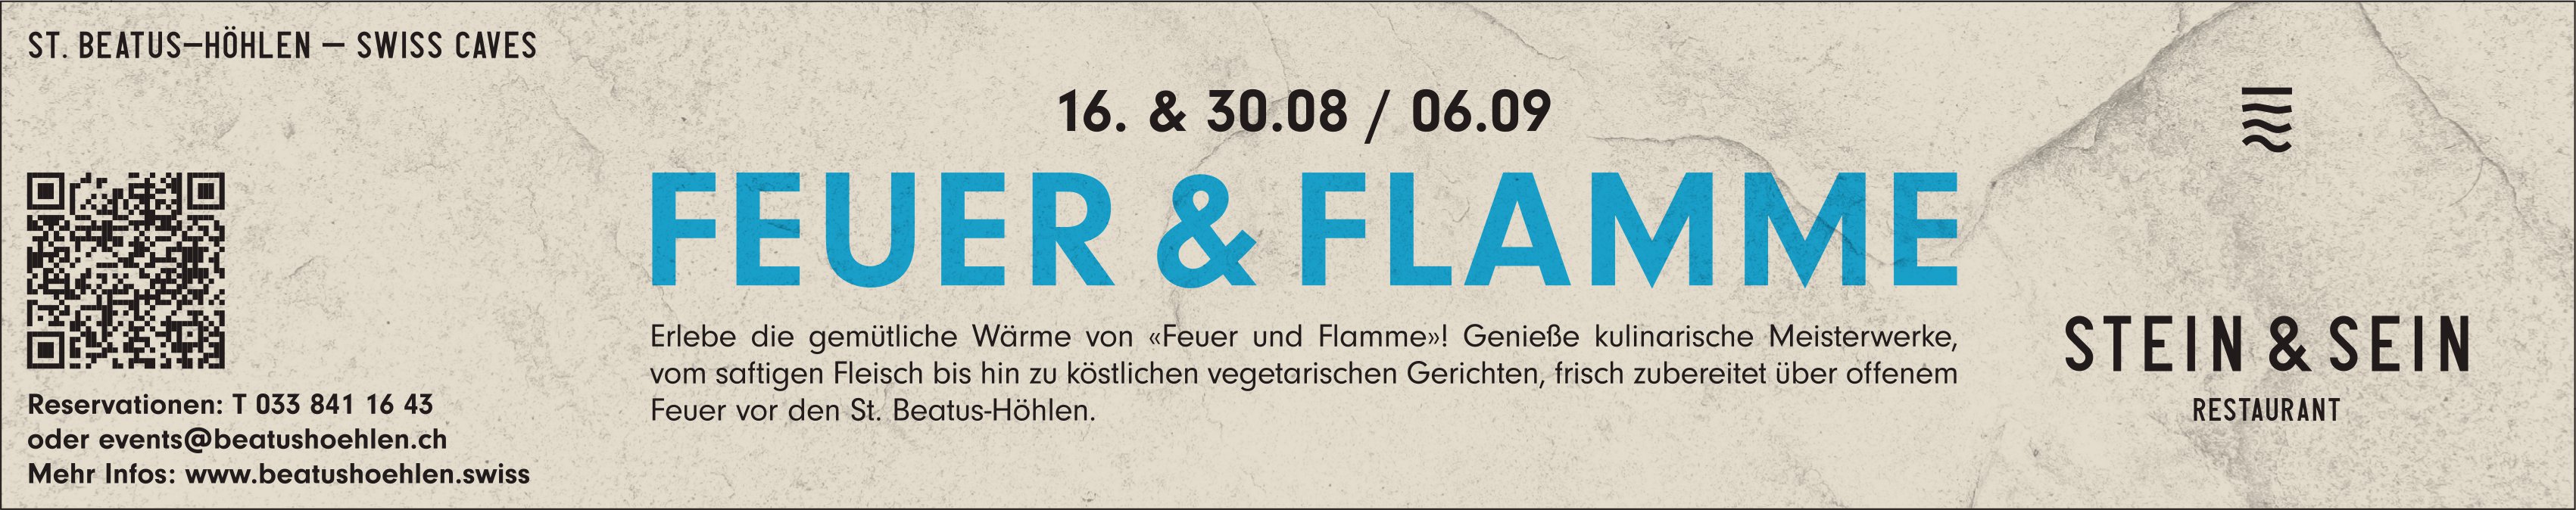 Feuer & flamme, 16. & 30.08. / 06.09, Stein & Sein Restaurant